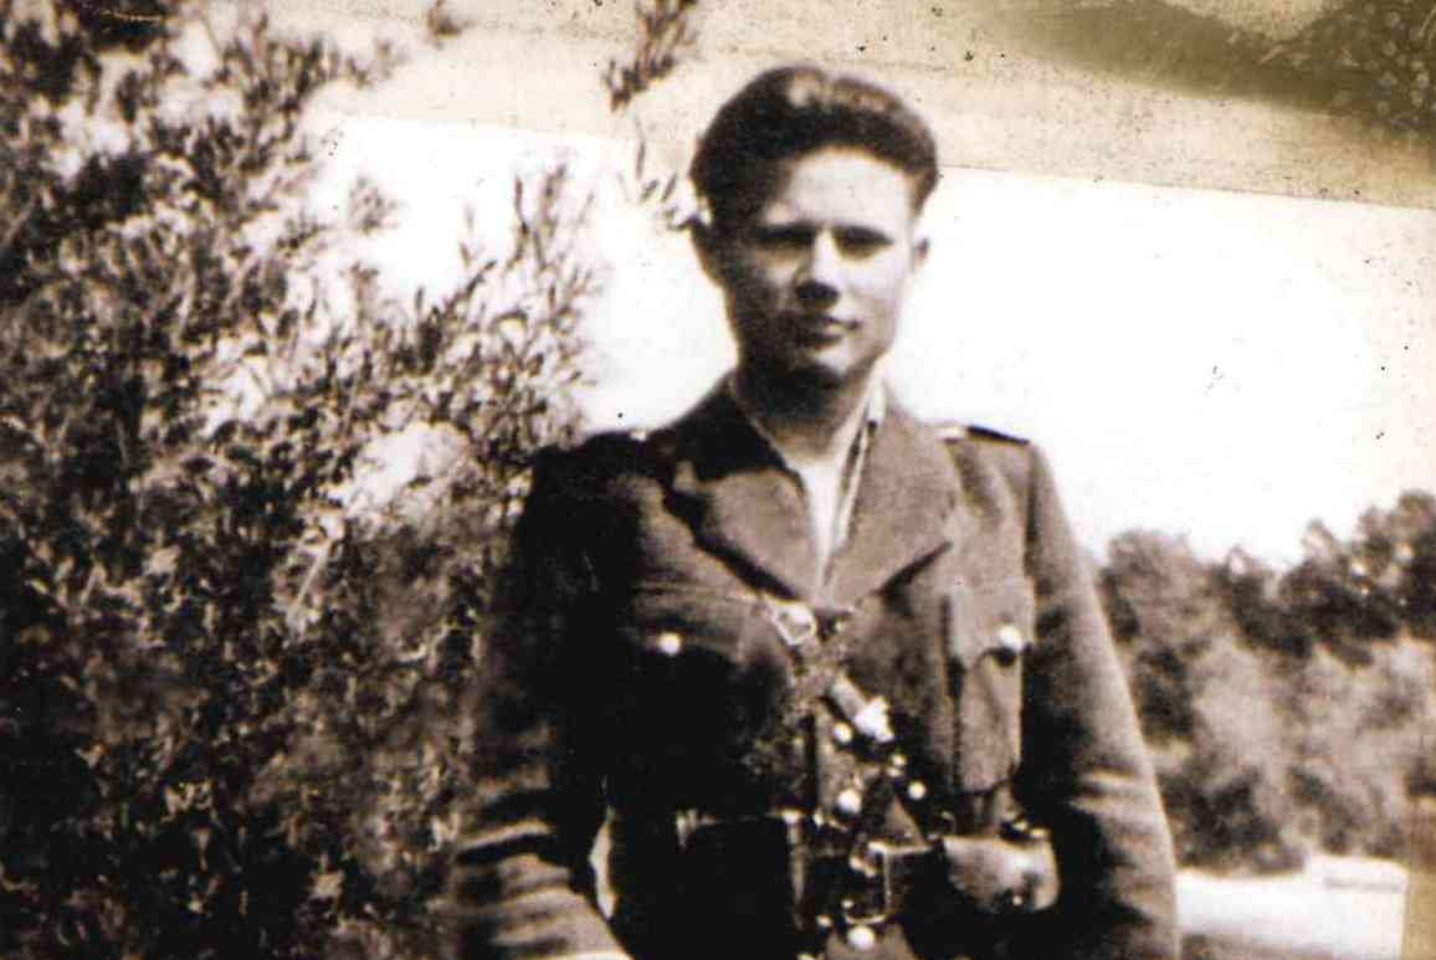 Mirė buvęs partizanas, Laisvės premijos laureatas J. Abukauskas-Siaubas.<br> Asmeninio archyvo nuotr.